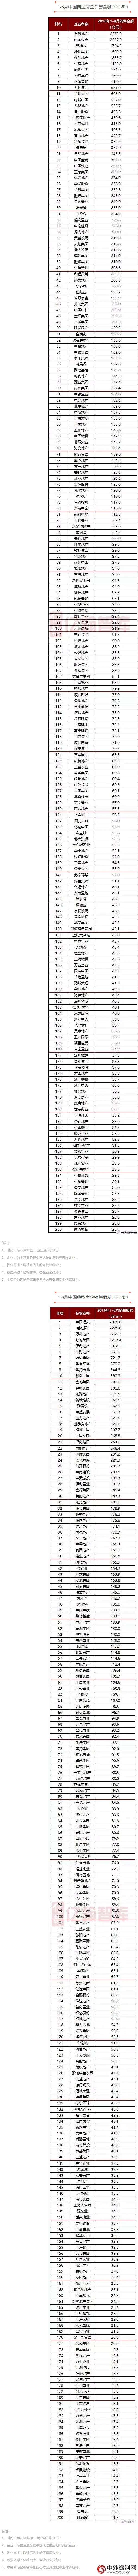 2016年1-8月中国典型房企销售业绩排行榜TOP200